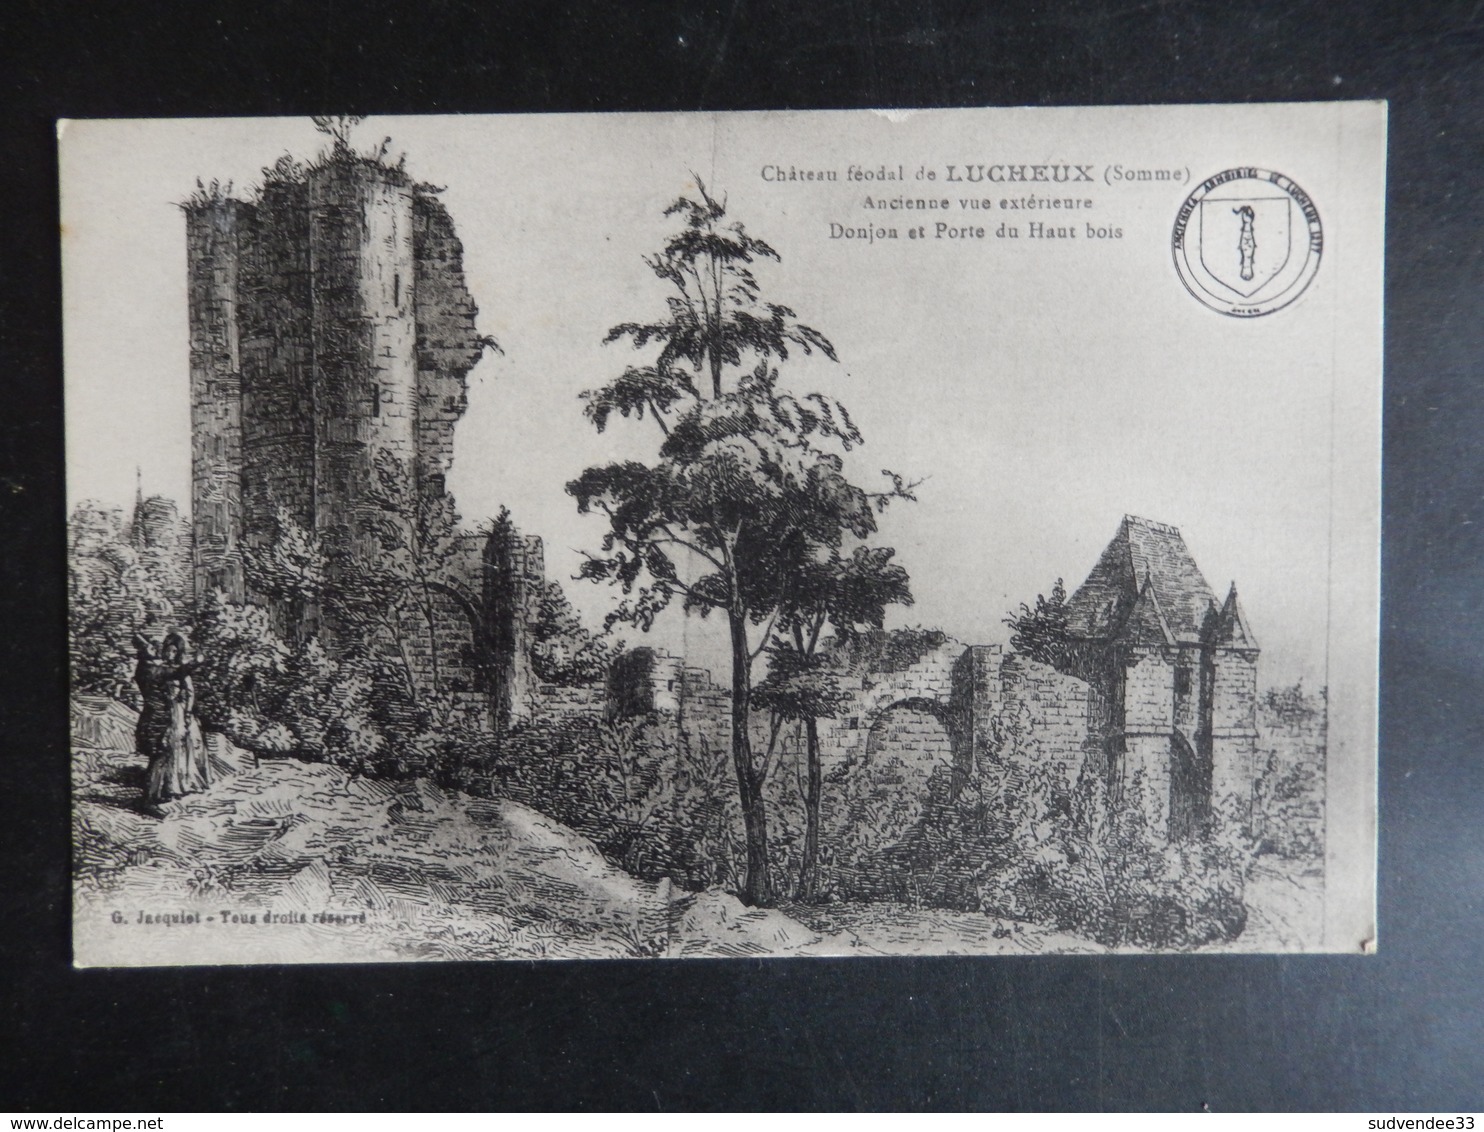 Cartes postales de la Somme (+ de 50)